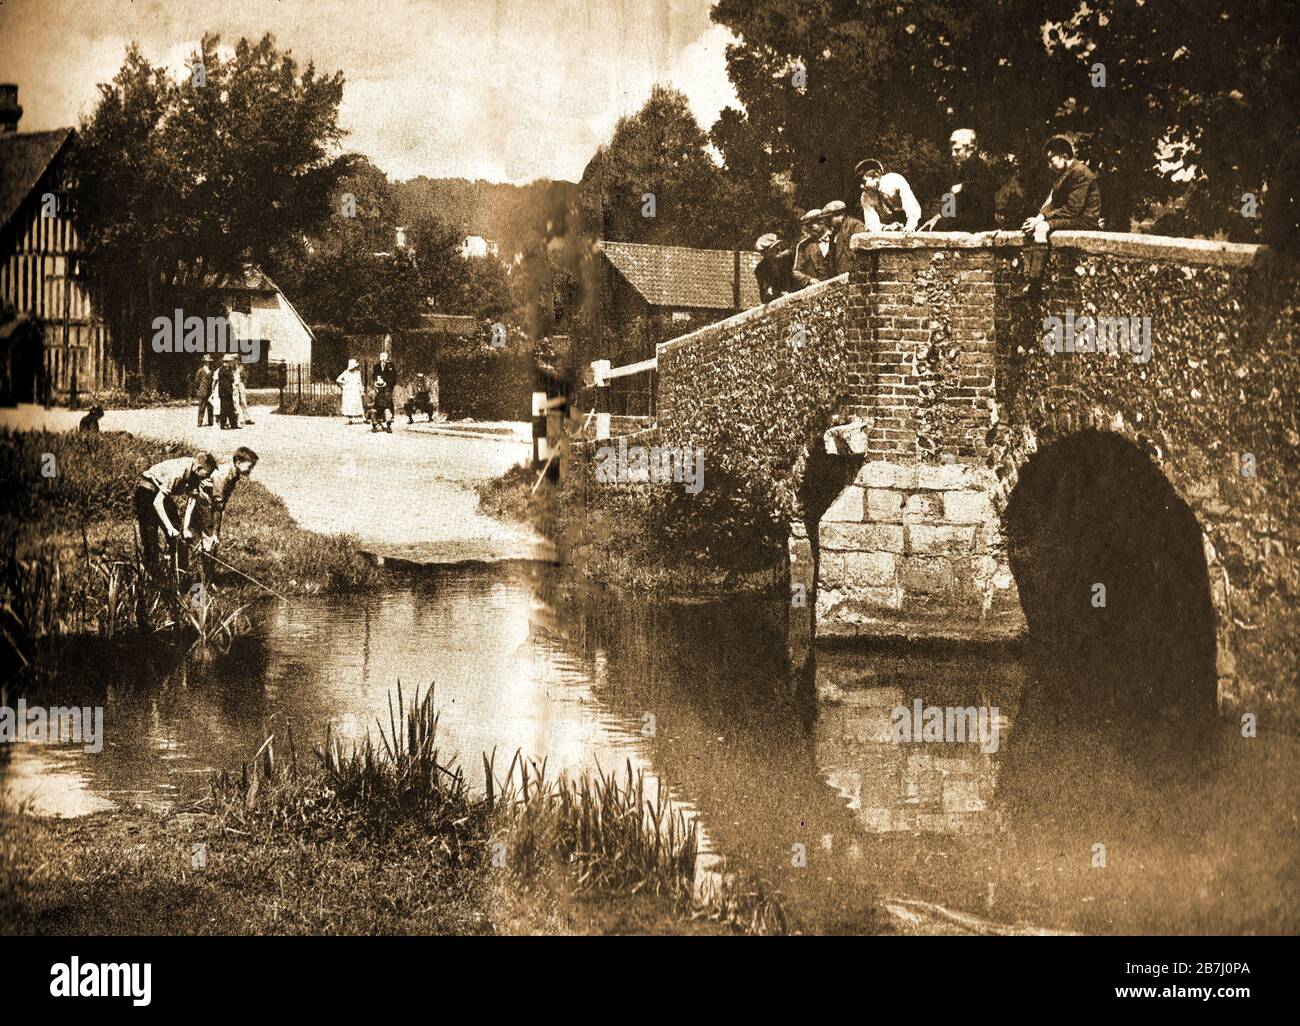 Ein Vintage-Foto des ford in der Eynsford Bridge Kent in den vierziger Jahren. Schuljungen und alte Männer stehen auf der Brücke und beobachten dabei, wie ein Vater und Sohn in den ruhigen Tagen angeln, in denen der Autoverkehr selten zu sehen war. Es hat im Laufe der Jahre im Fernsehen und in Filmen fatured, darunter eine Serie von "32 Meilen vom Piccadilly Circus" mit Alex Kennedy (Smithy), 'Save Lullingstone Castle' und eine Szene in der örtlichen Kirche in 'Love eigentlich'. Eynsford wurde 864 erstmals urkundlich erwähnt und hat drei historische Stätten, Lullingstone Castle, Eynsford Castle und eine römische Villa Stockfoto